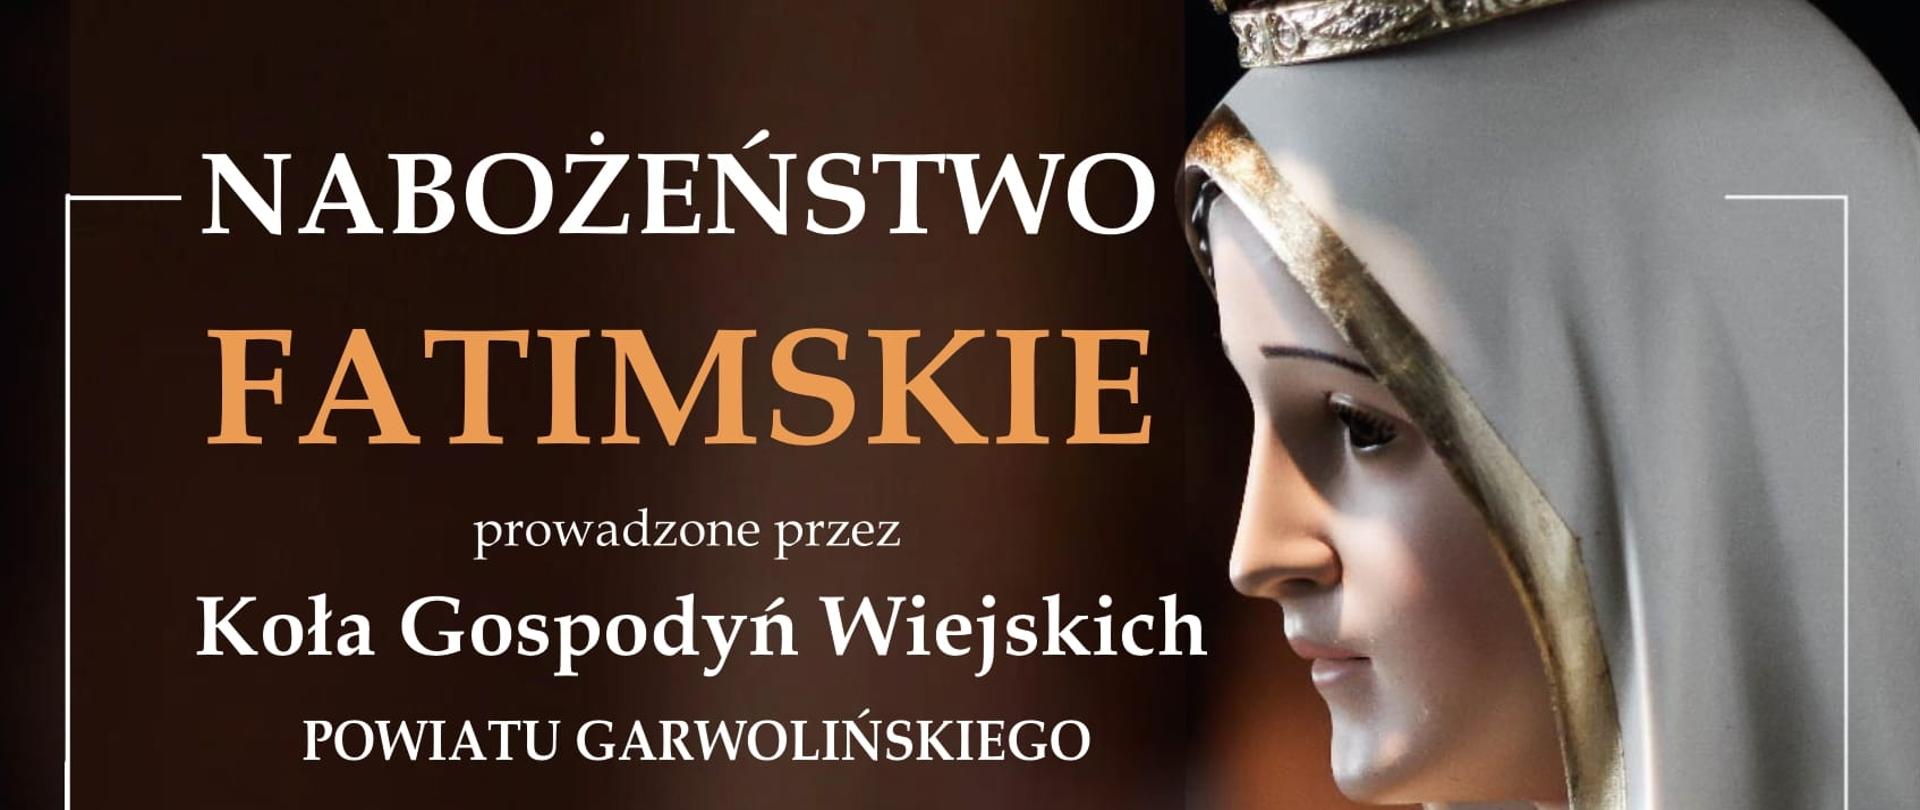 Nabożeństwo Fatimskie prowadzone przez KGW Powiatu Garwolińskiego w Górkach 